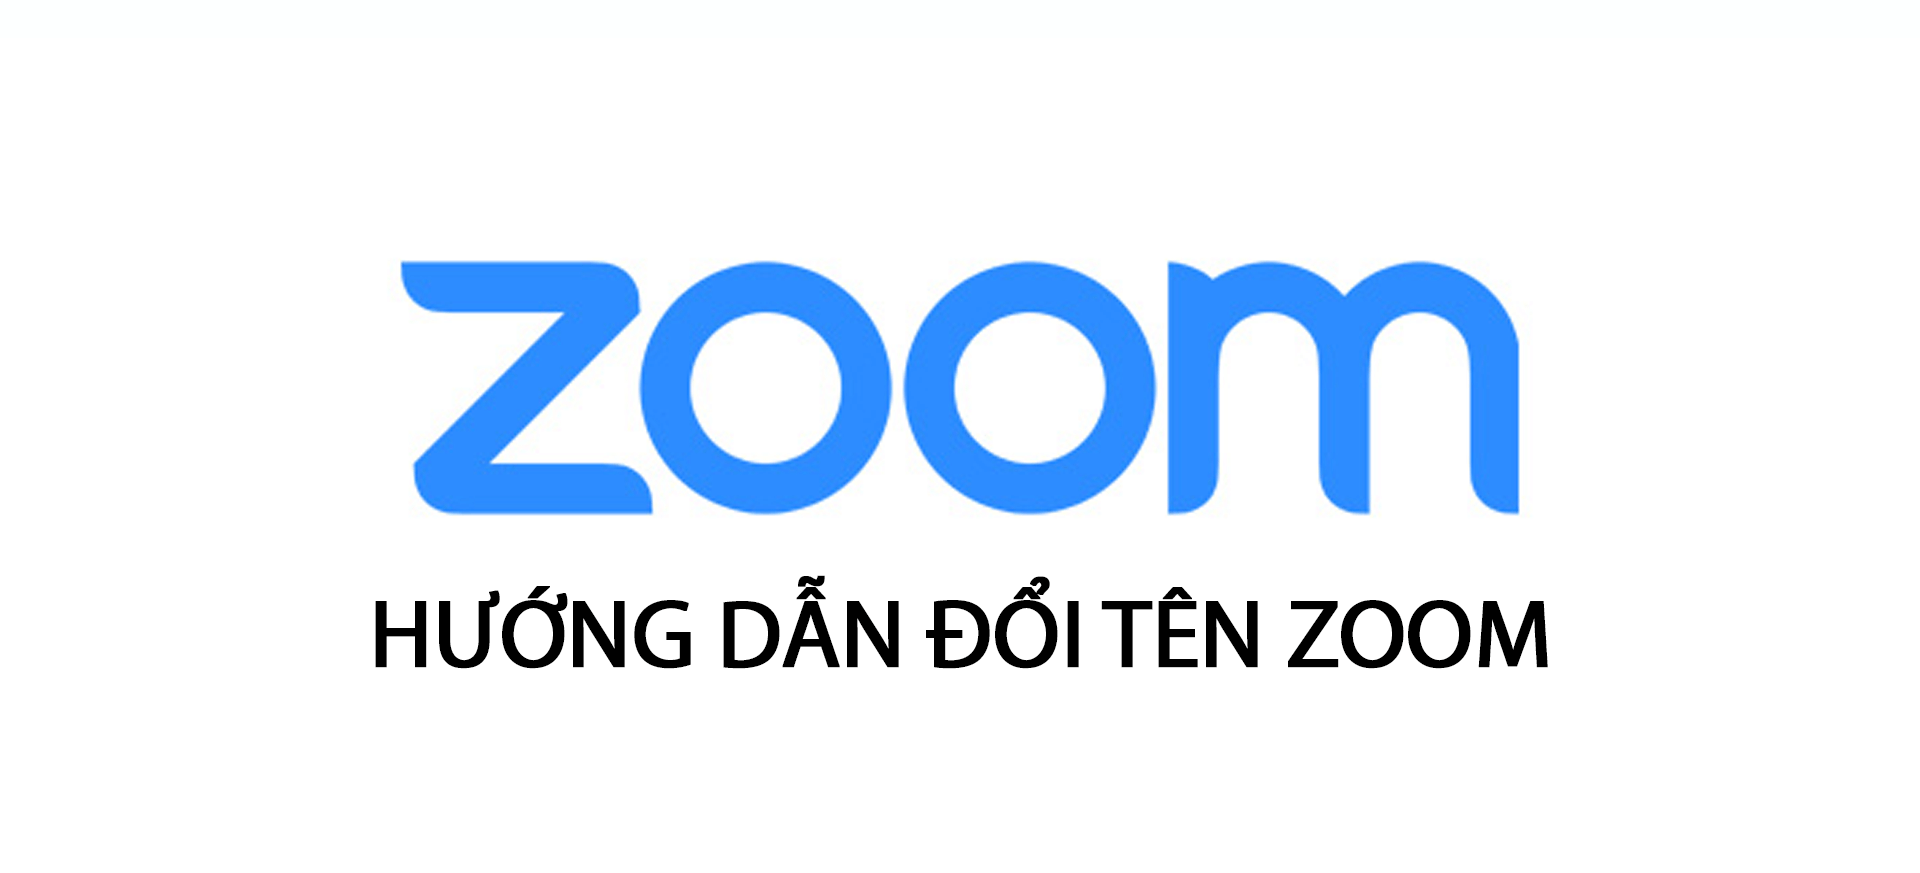 Hướng dẫn đổi tên zoom